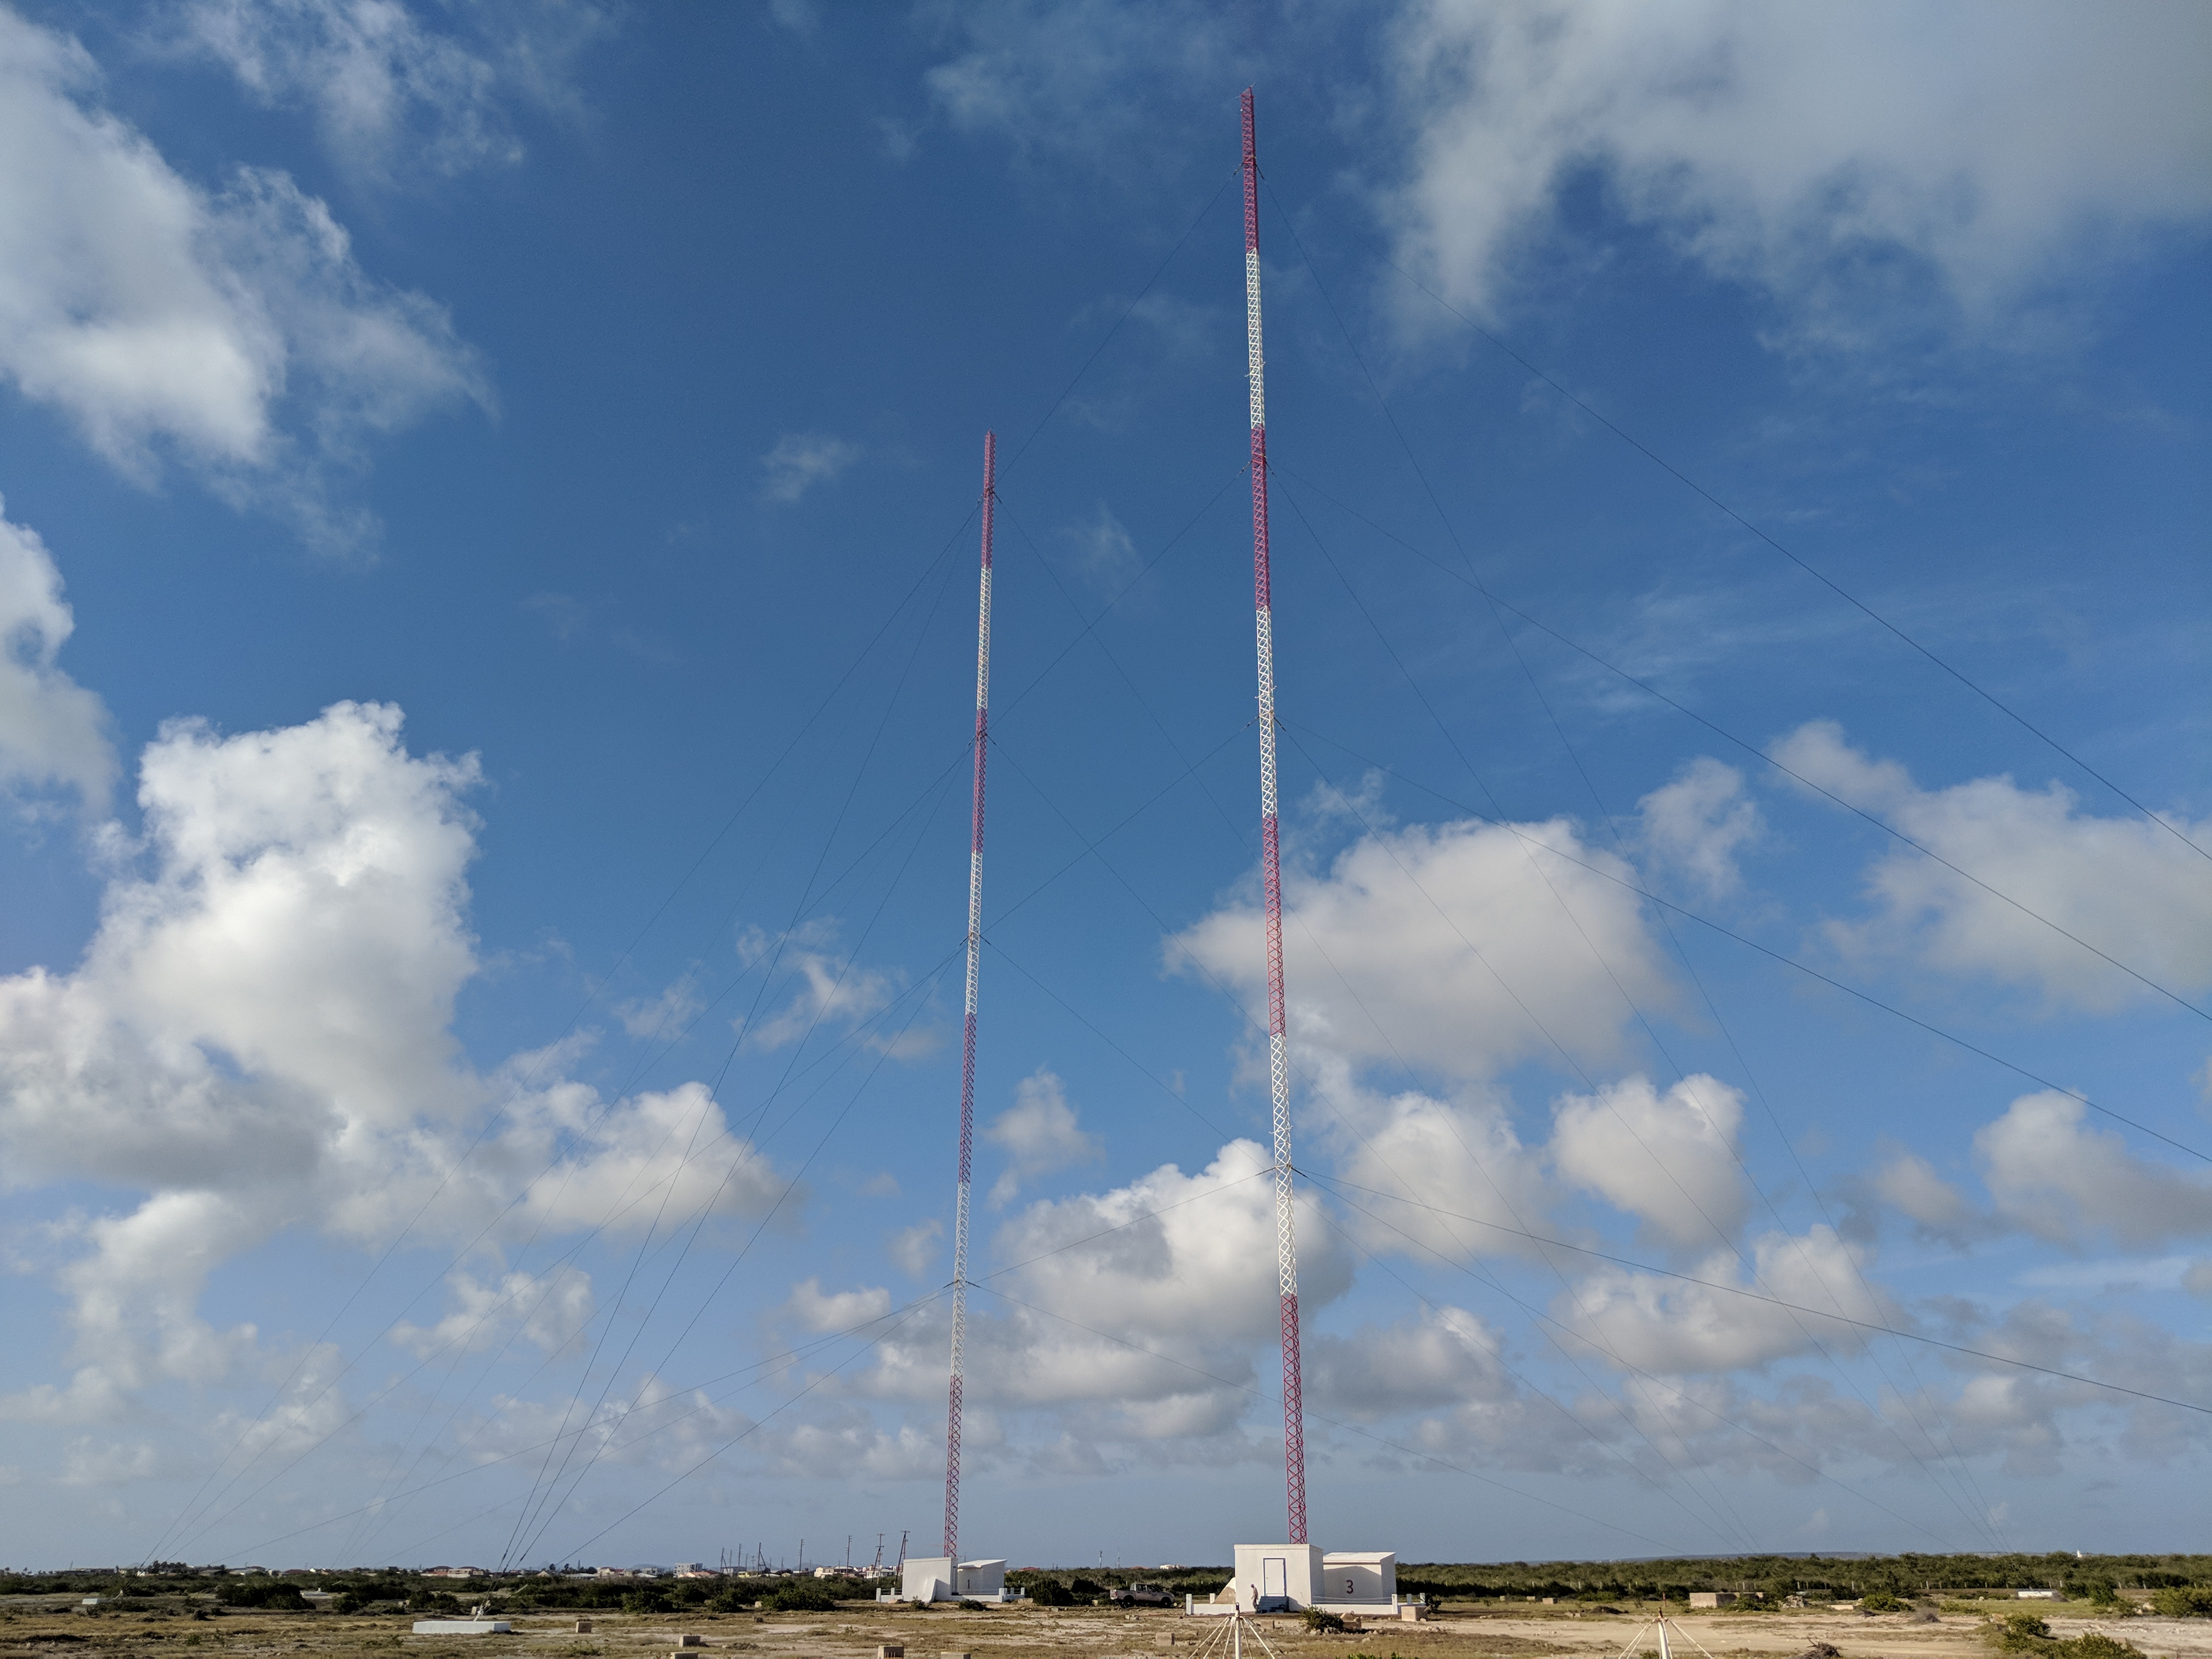 TWR Bonaire Transmitter Site